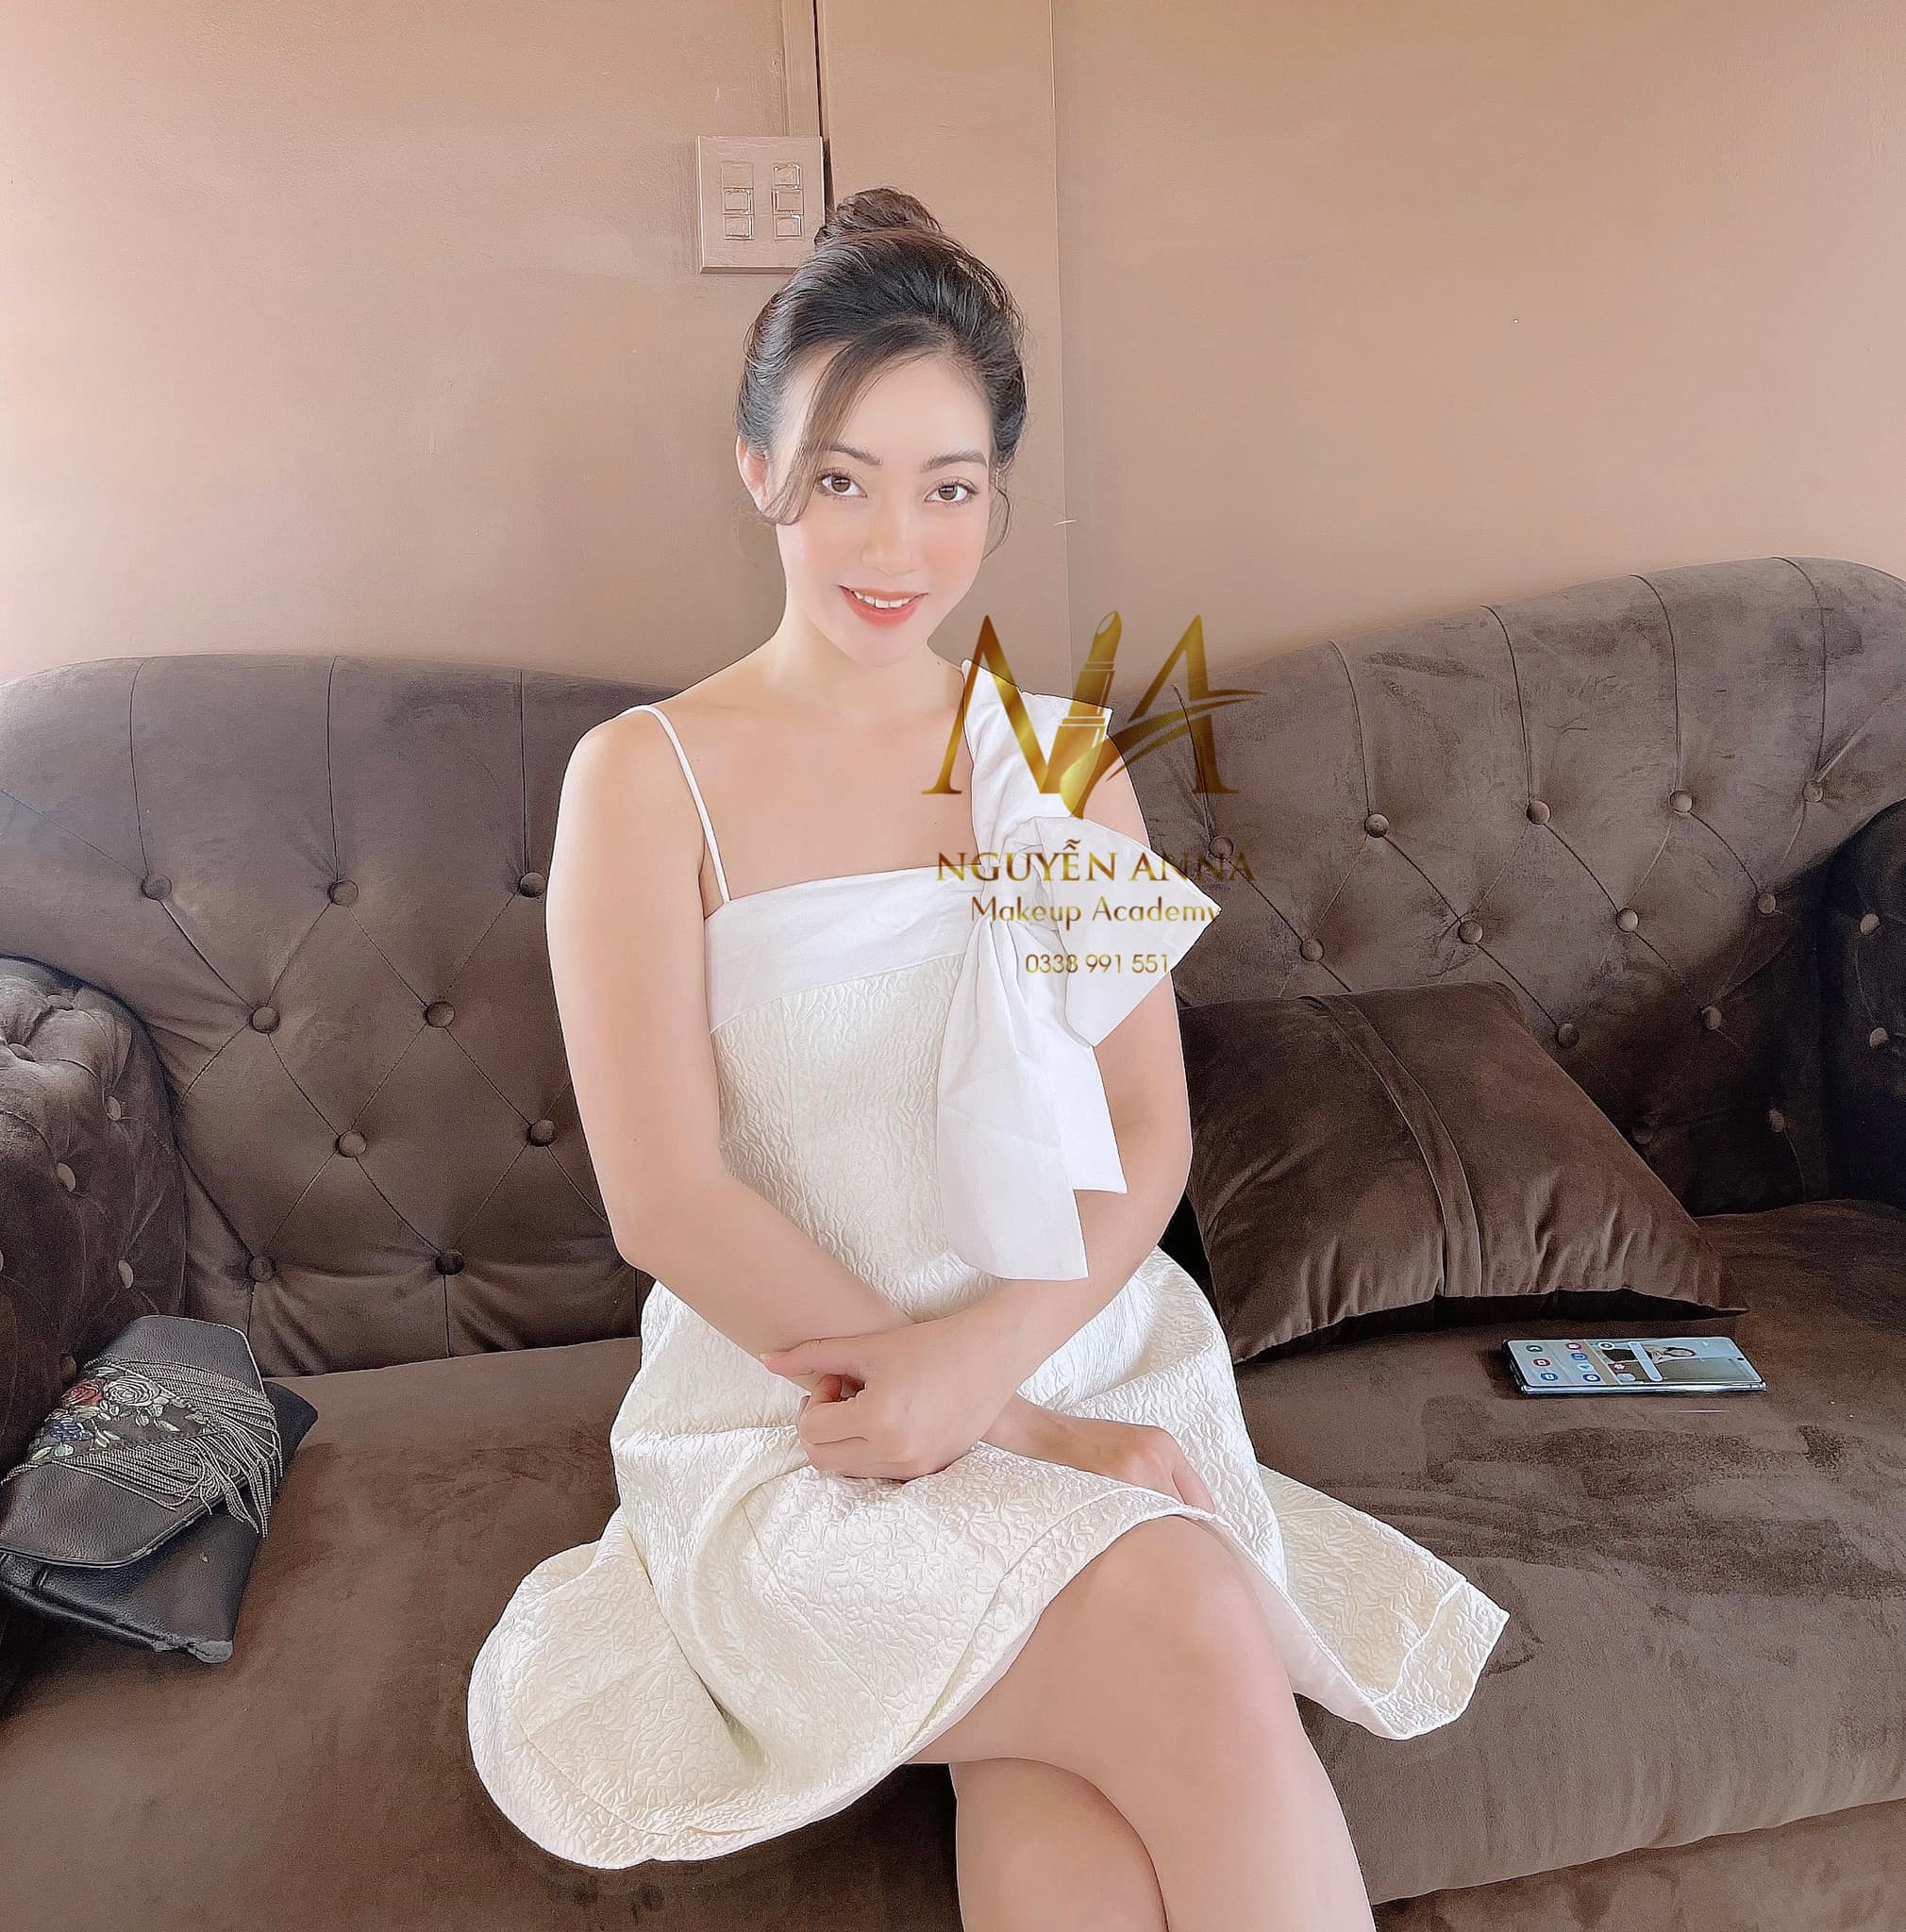 Top 7 tiệm trang điểm cô dâu đẹp nhất tại Cần Thơ -  Nguyễn Anna Makeup